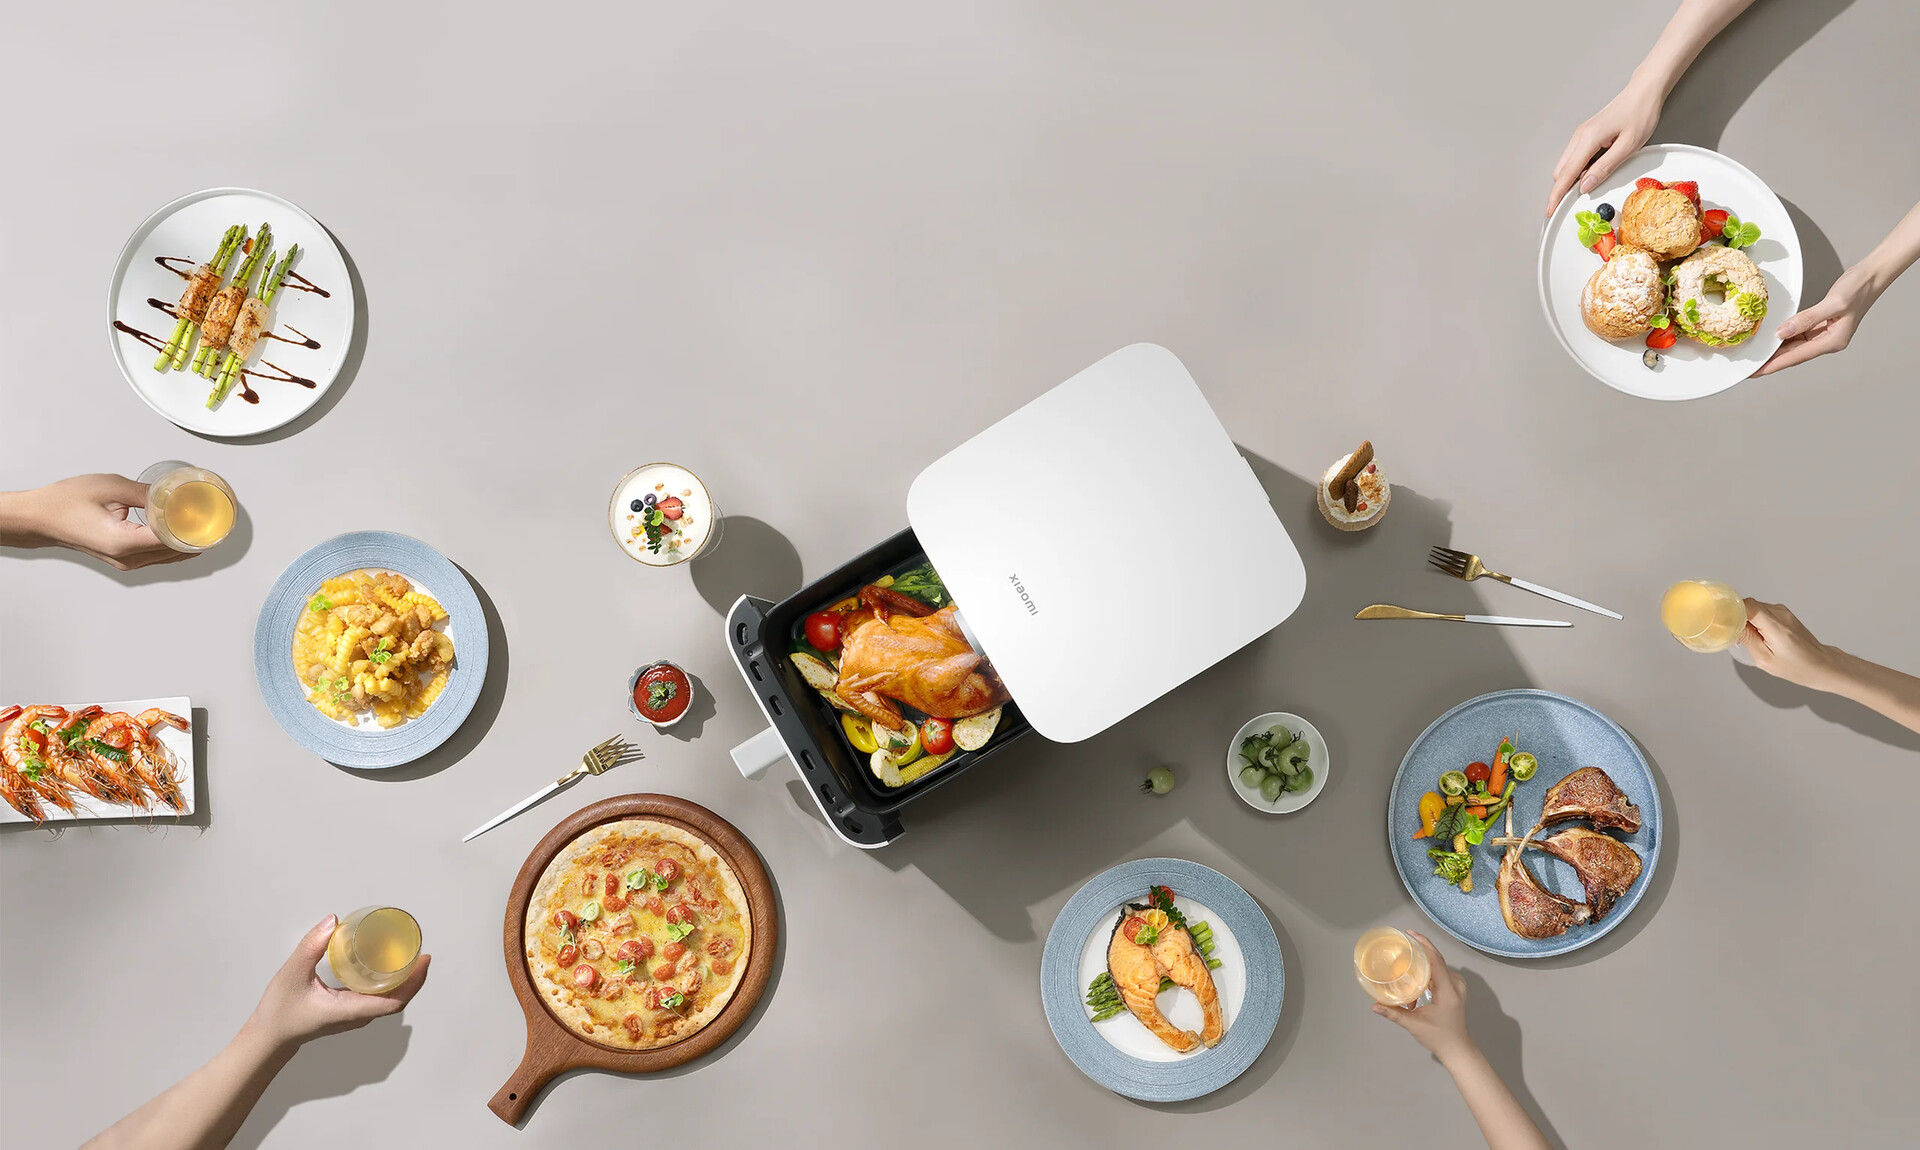 Presentata la nuova Xiaomi Smart Air Fryer da 6,5 l con funzione